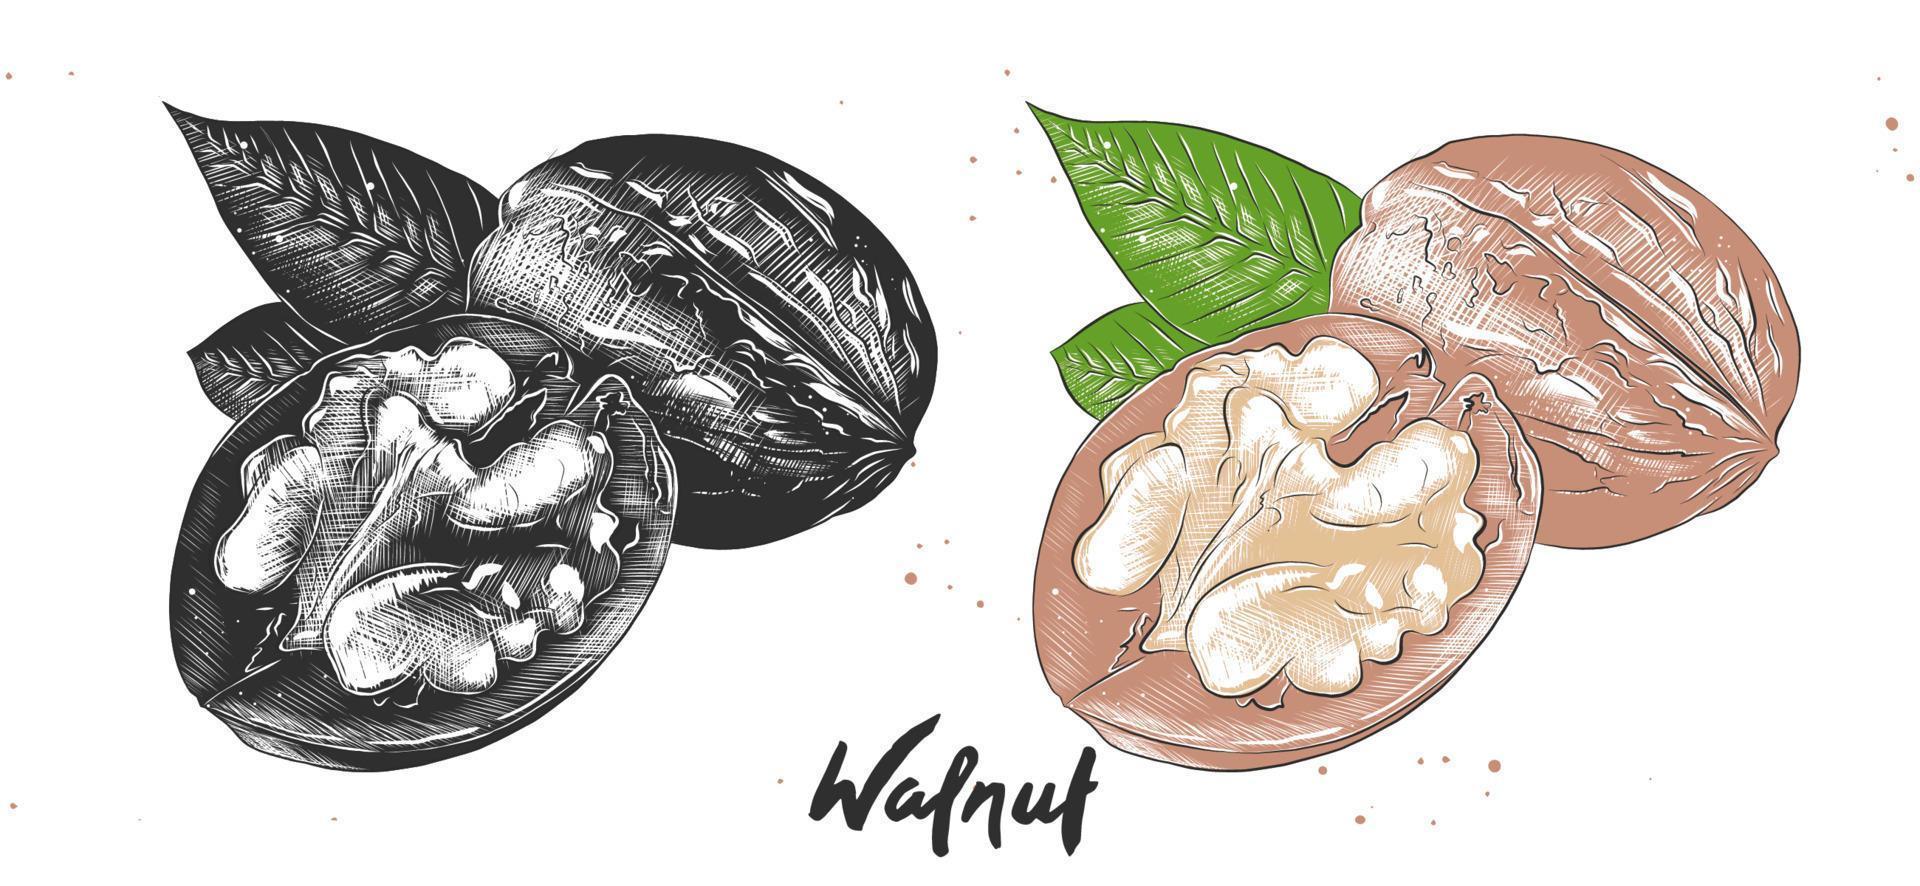 vektor graverad stil illustration för affischer, dekoration och tryck. handritad etsskiss av valnötter i monokrom och färgglad. detaljerad vegetarisk mat linosnitt ritning.